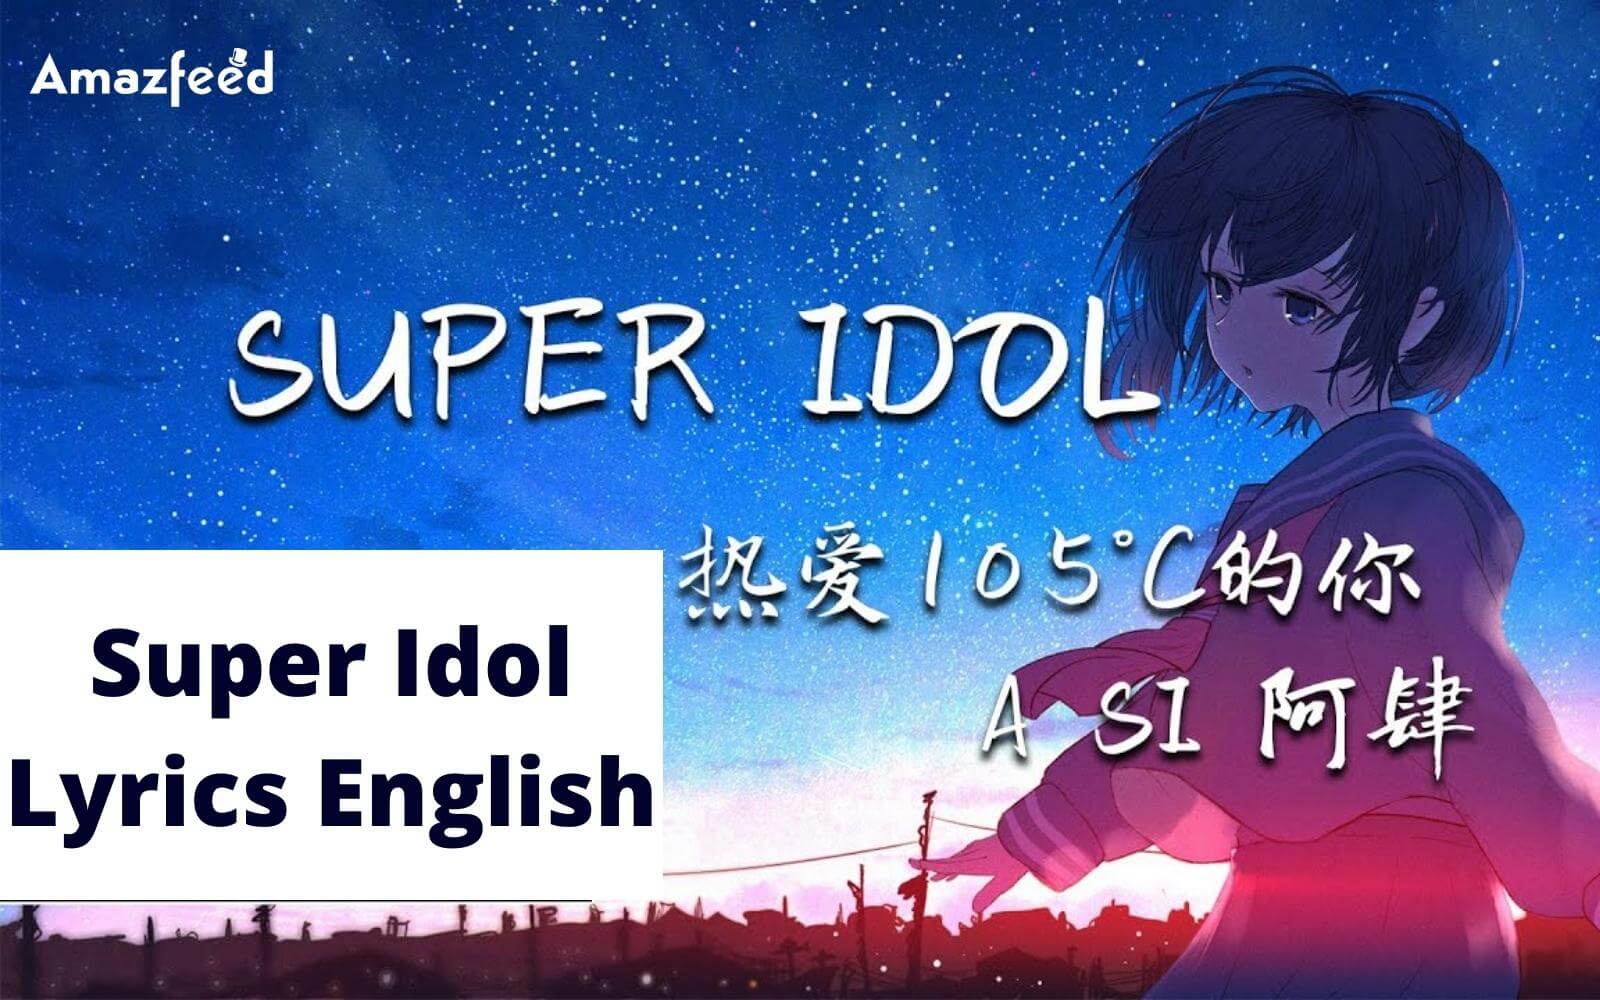 Super Idol Song Lyrics in English - By A Si » Amazfeed